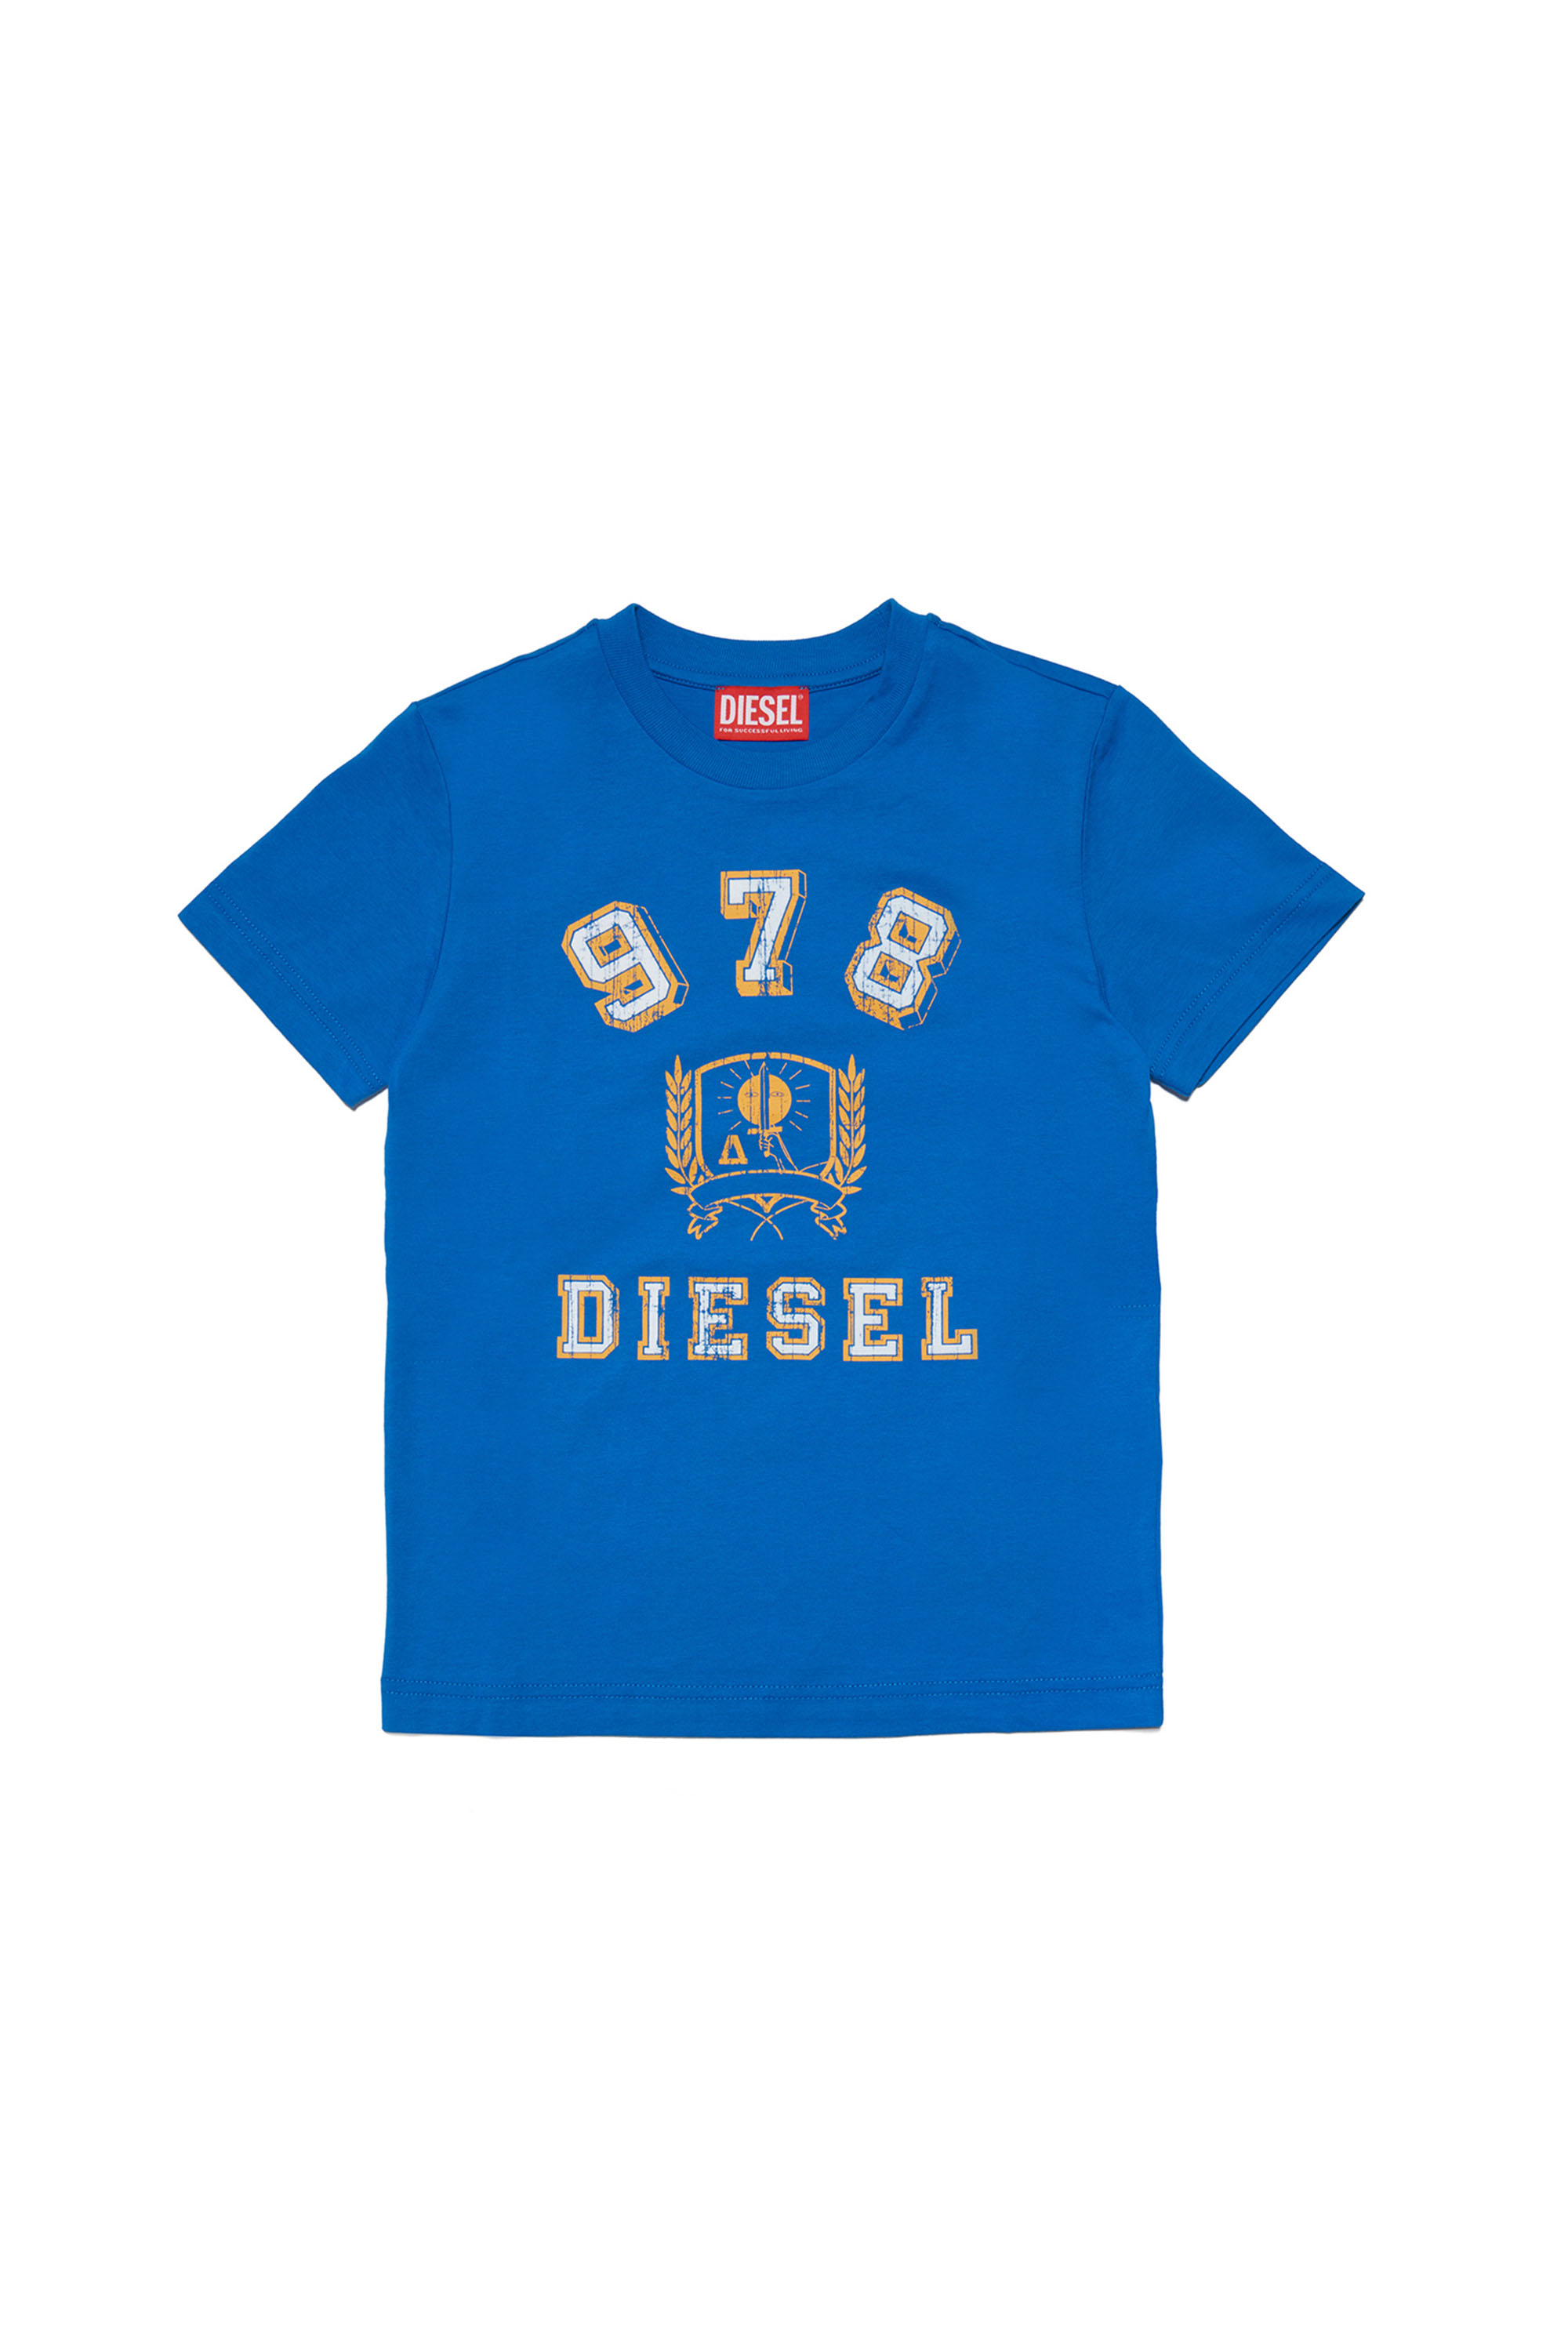 Diesel - TDIEGORE11, Azul - Image 1